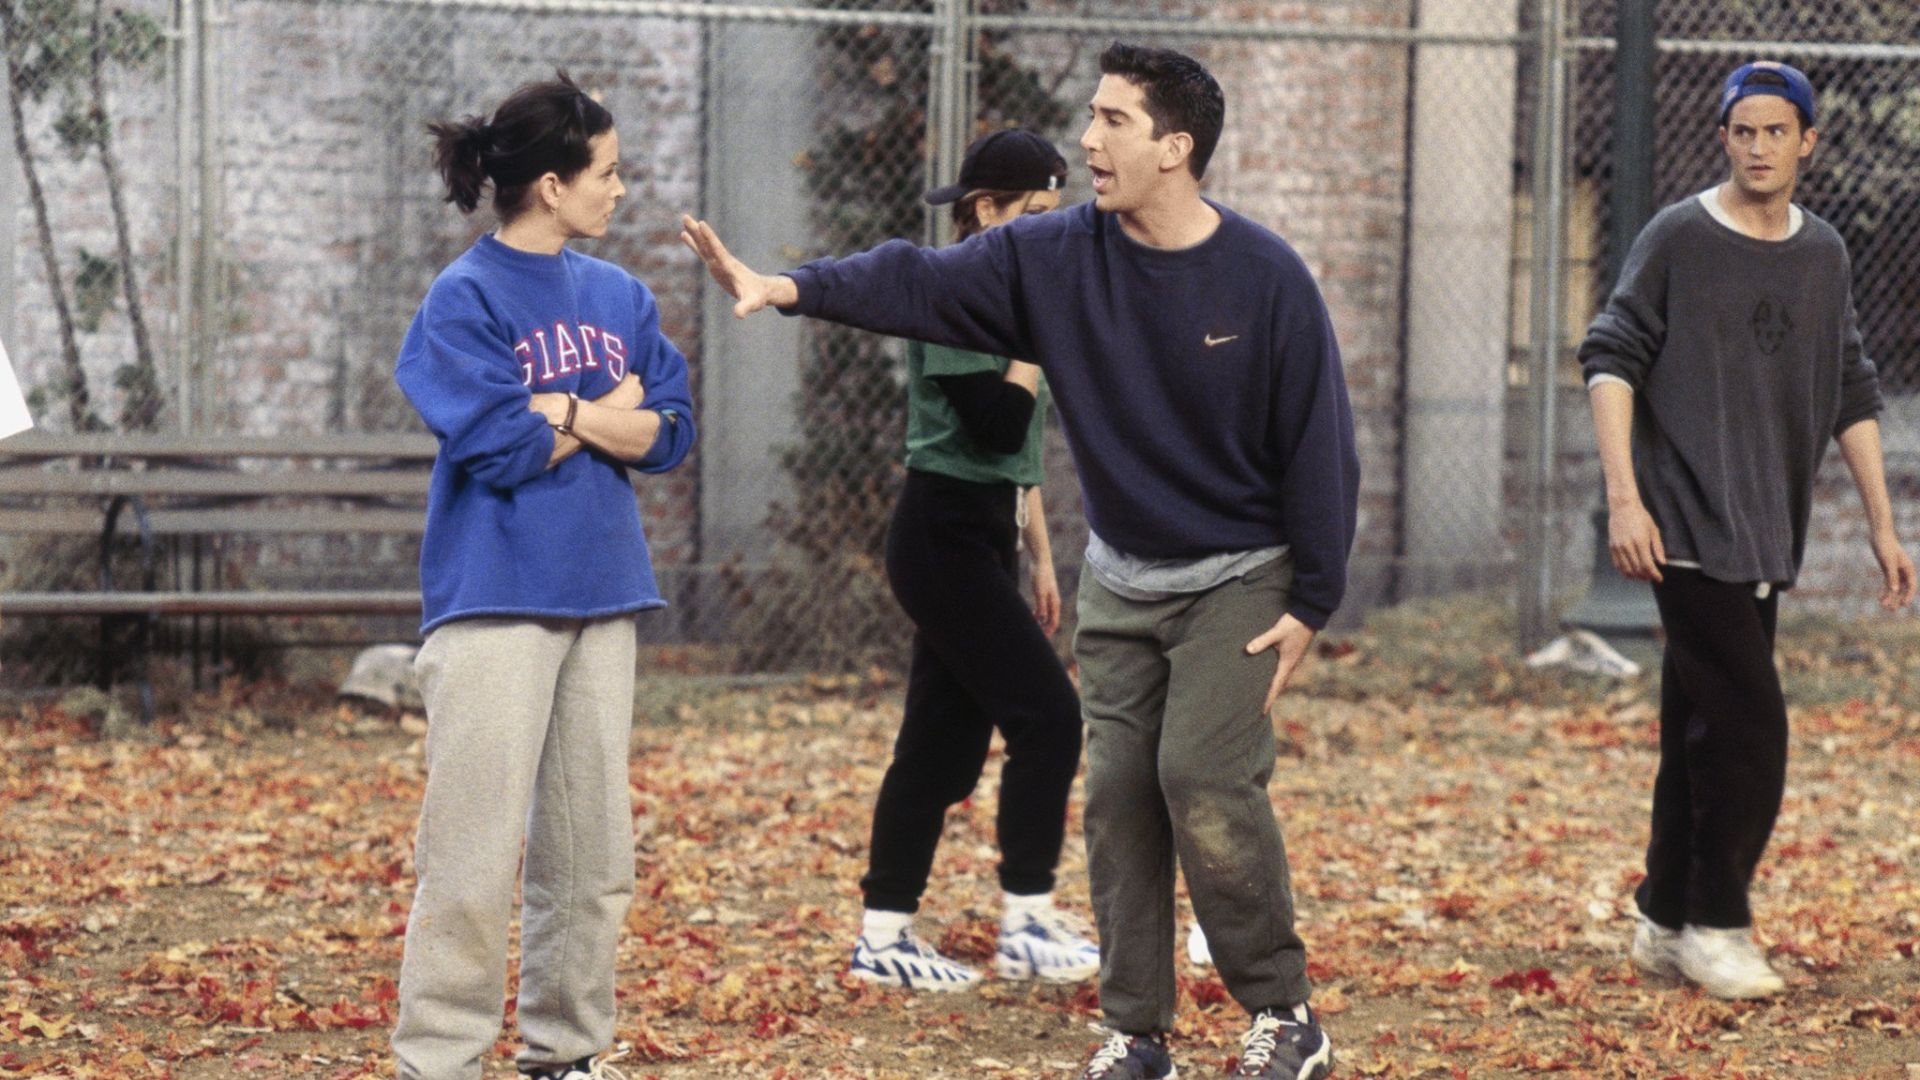 Em uma partida de futebol na 3ª temporada de Friends, Monica e Ross mostram como são competitivos (Foto: Divulgação/Warner Bros. Television)